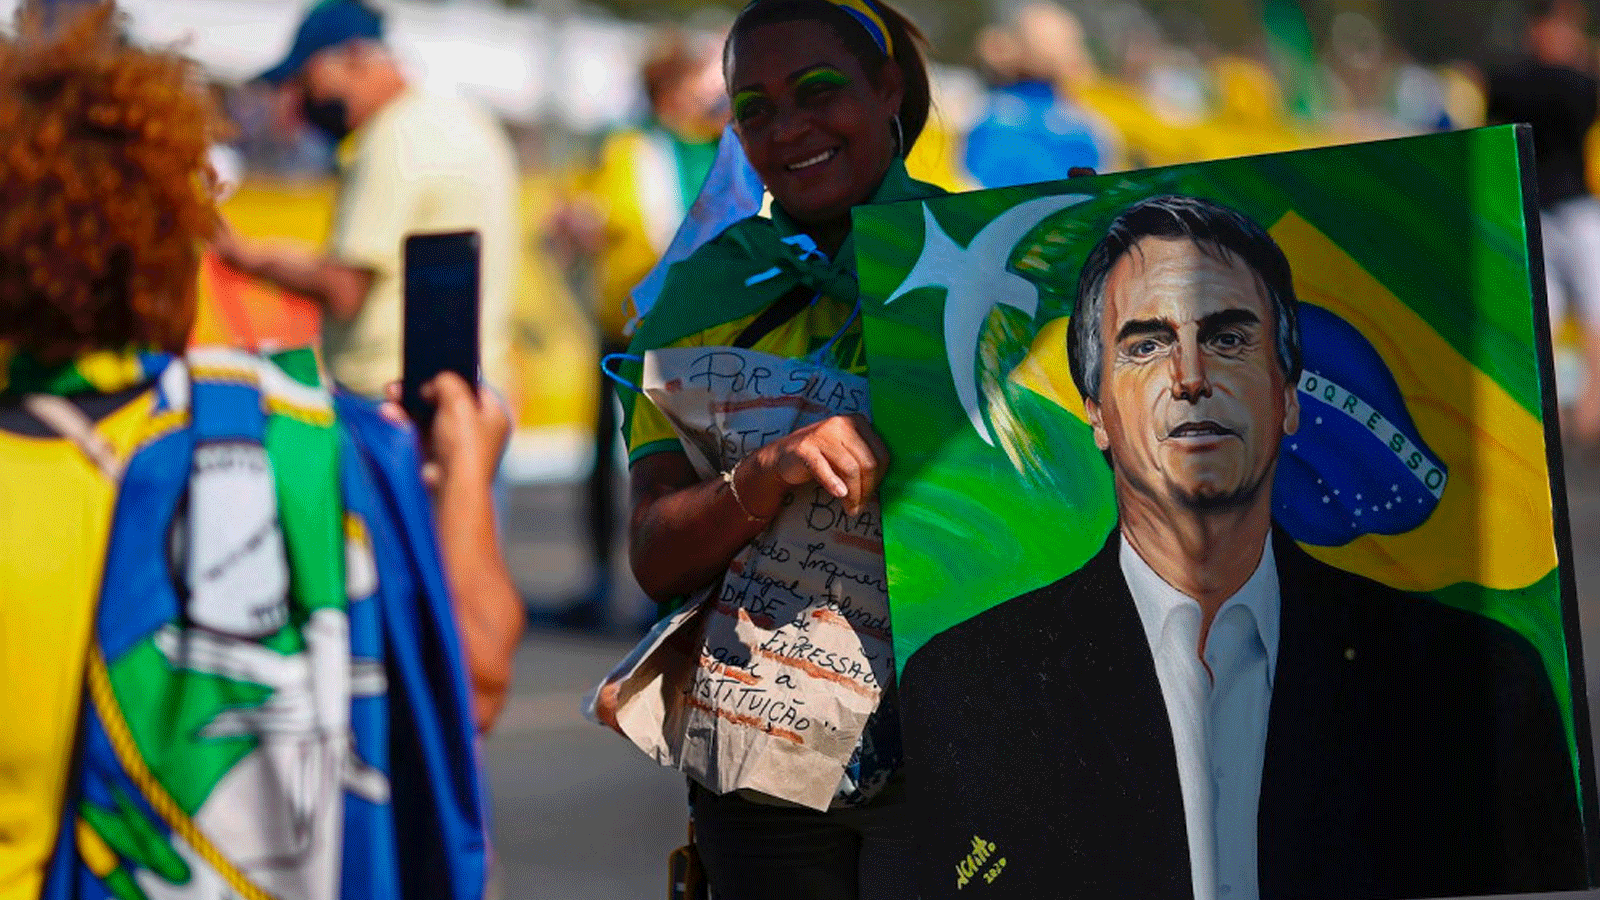 امرأة تقف لالتقاط صورة سريعة وهي تحمل صورة الرئيس البرازيلي جاير بولسونارو خلال مظاهرة لدعمه في برازيليا في 21 حزيران/يونيو 2021 